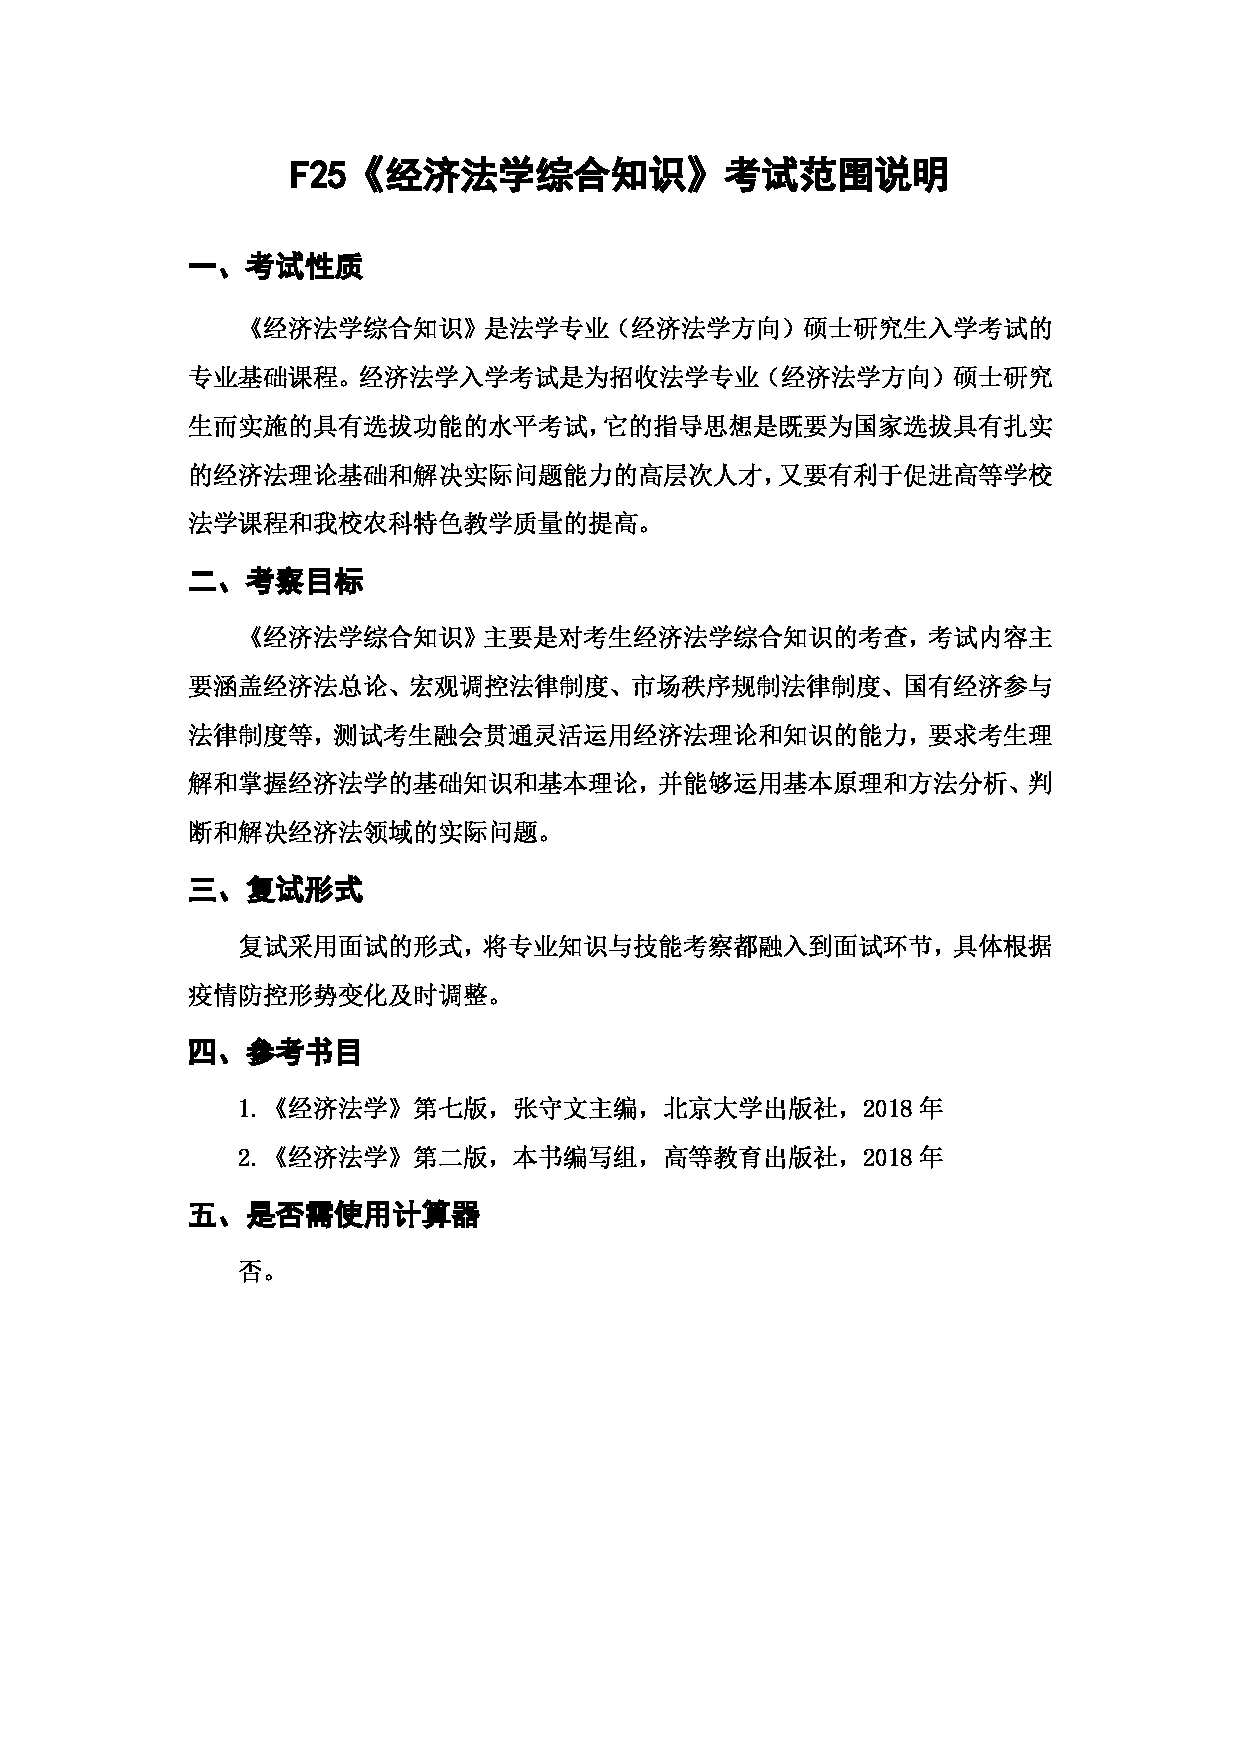 上海海洋大学2023年考研自命题科目 F25《经济法学综合知识》 考试范围第1页